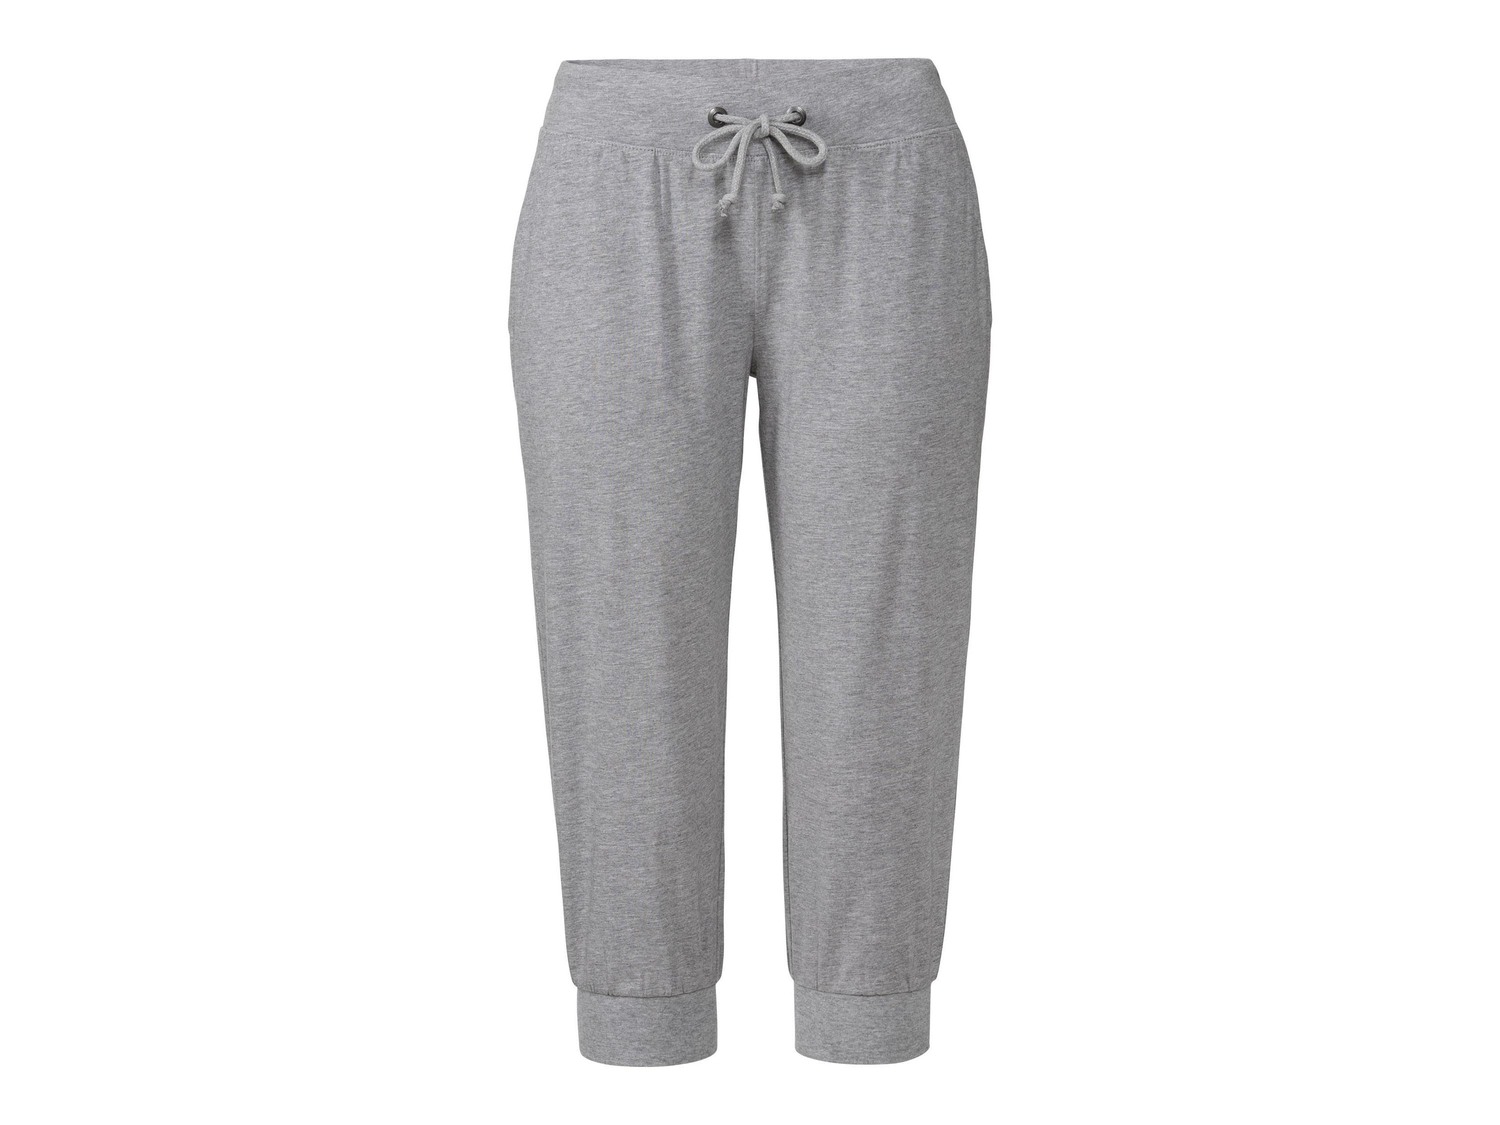 Pantaloni Capri da donna Esmara, prezzo 6.99 &#8364;  
Misure: S-L
- Oeko tex NEW